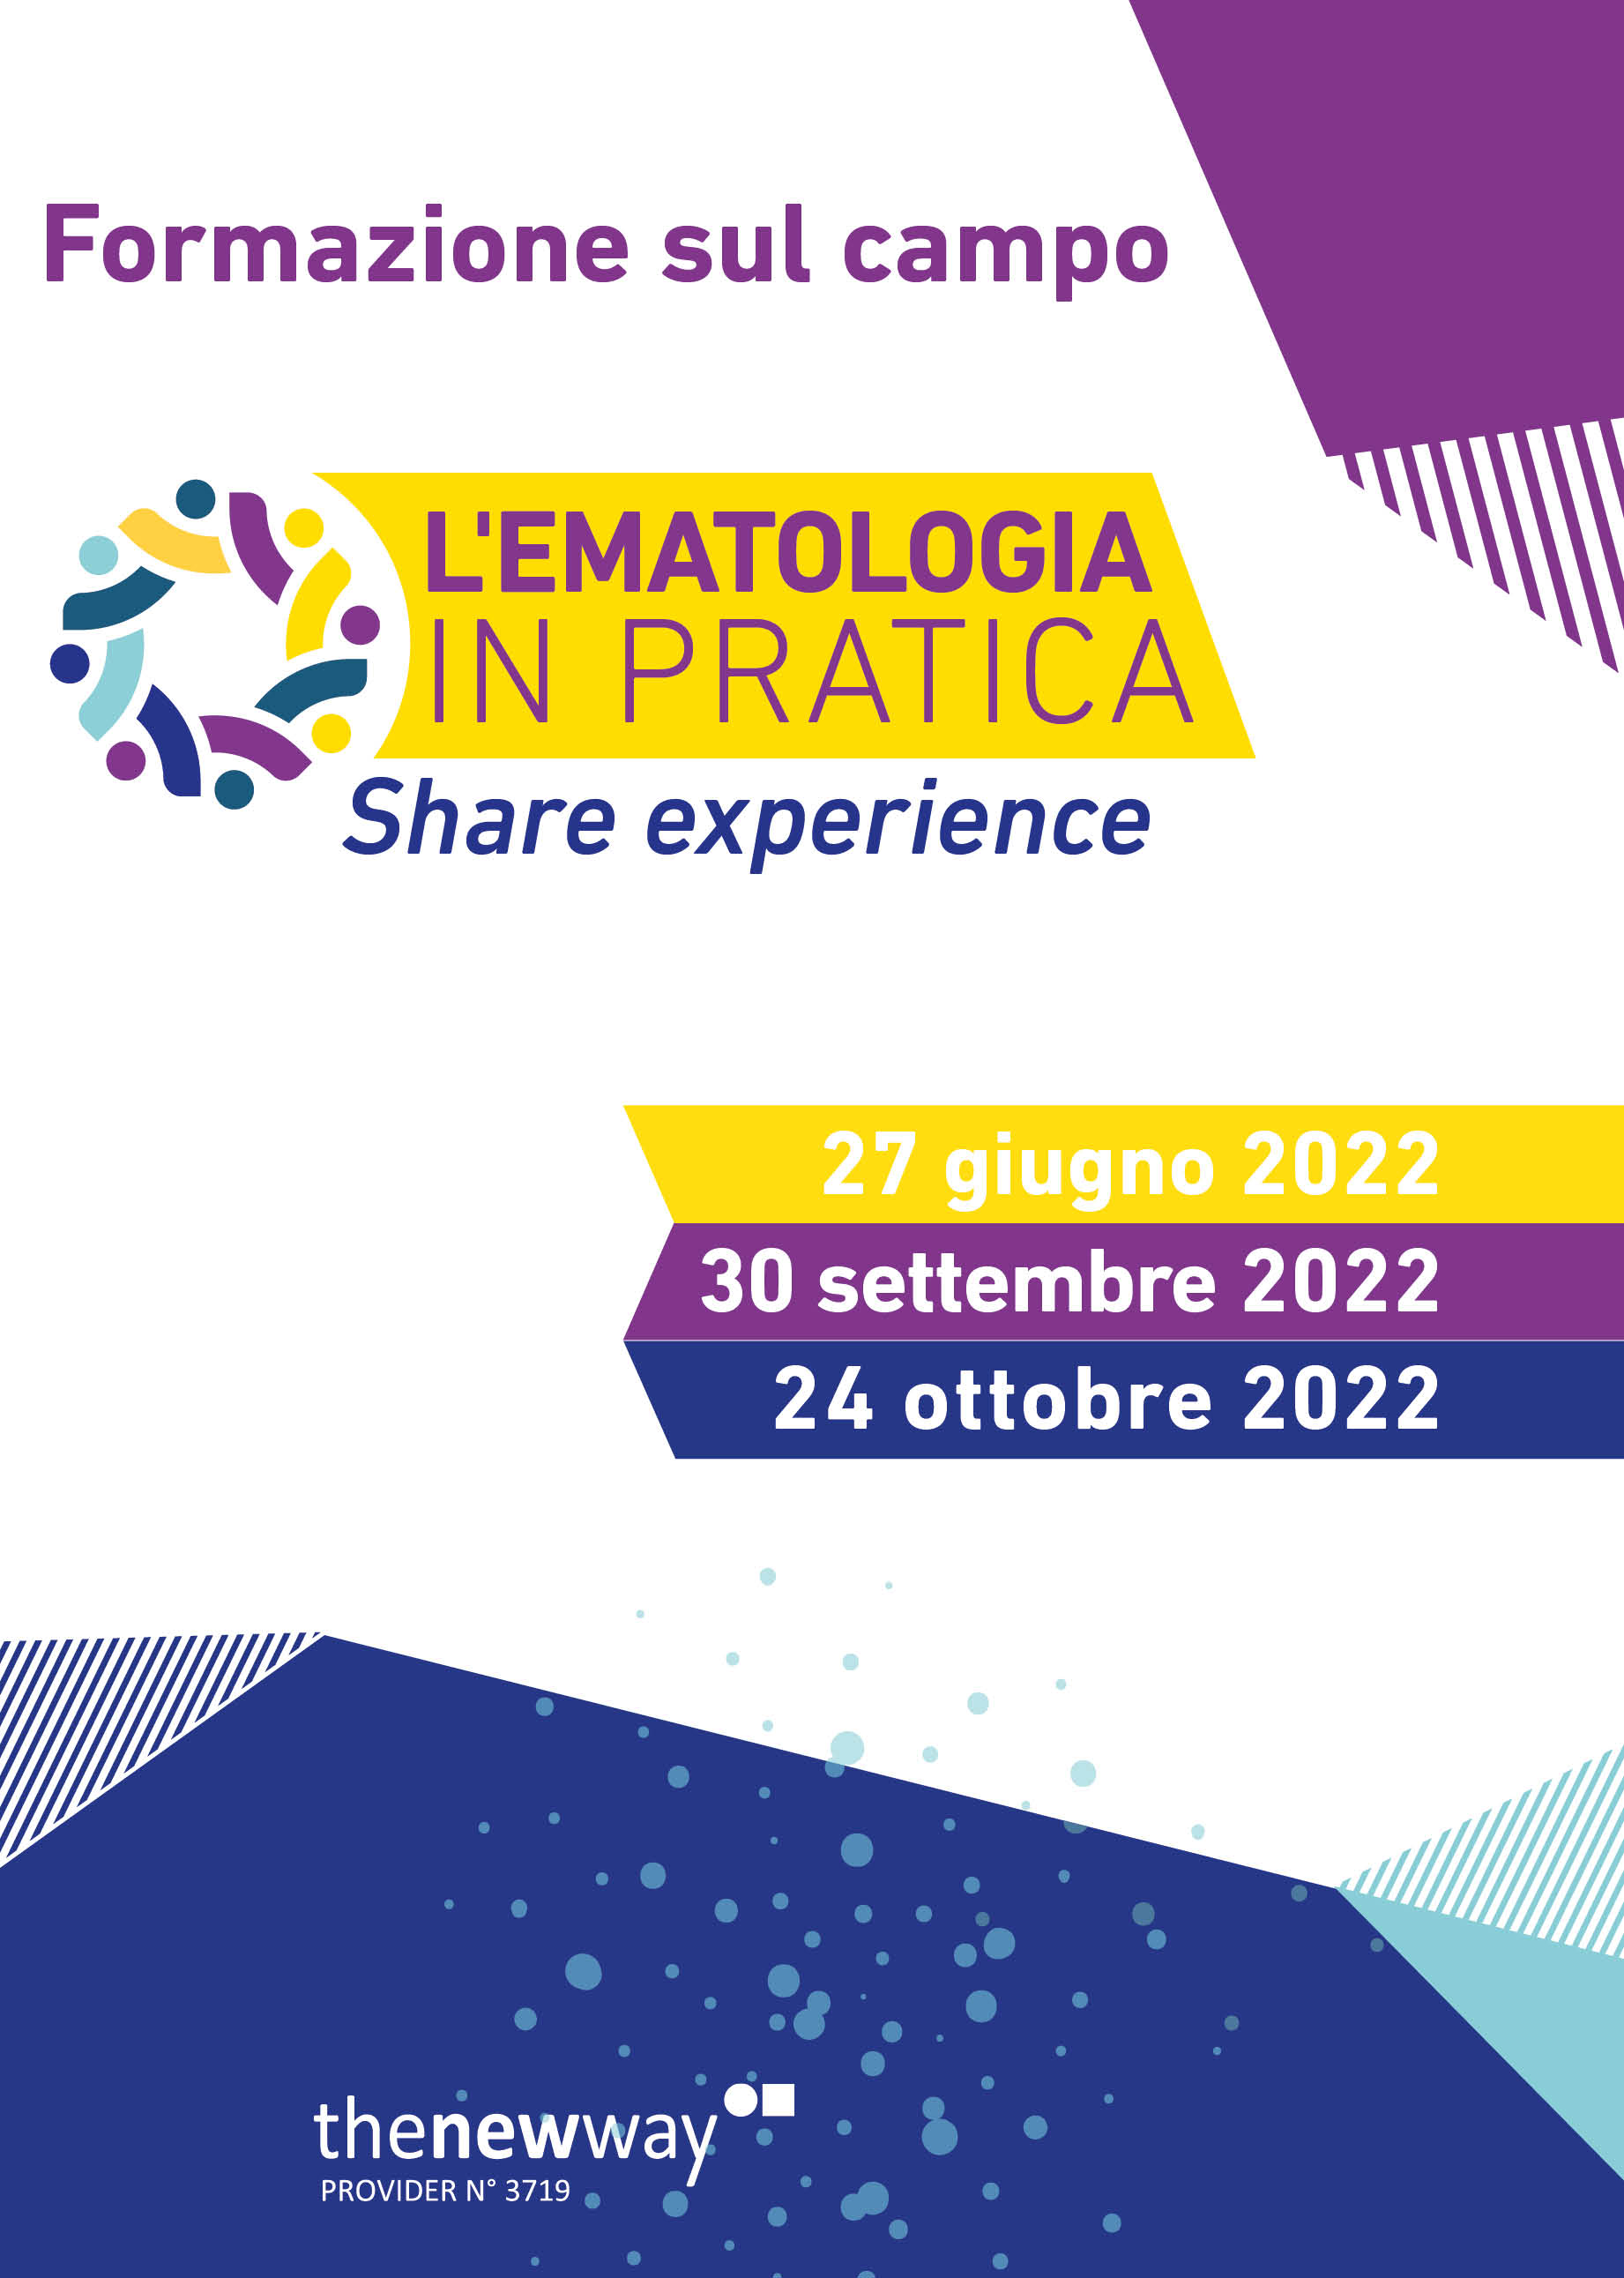 L'ematologia in pratica: share experience - Milano, 27 Giugno 2022